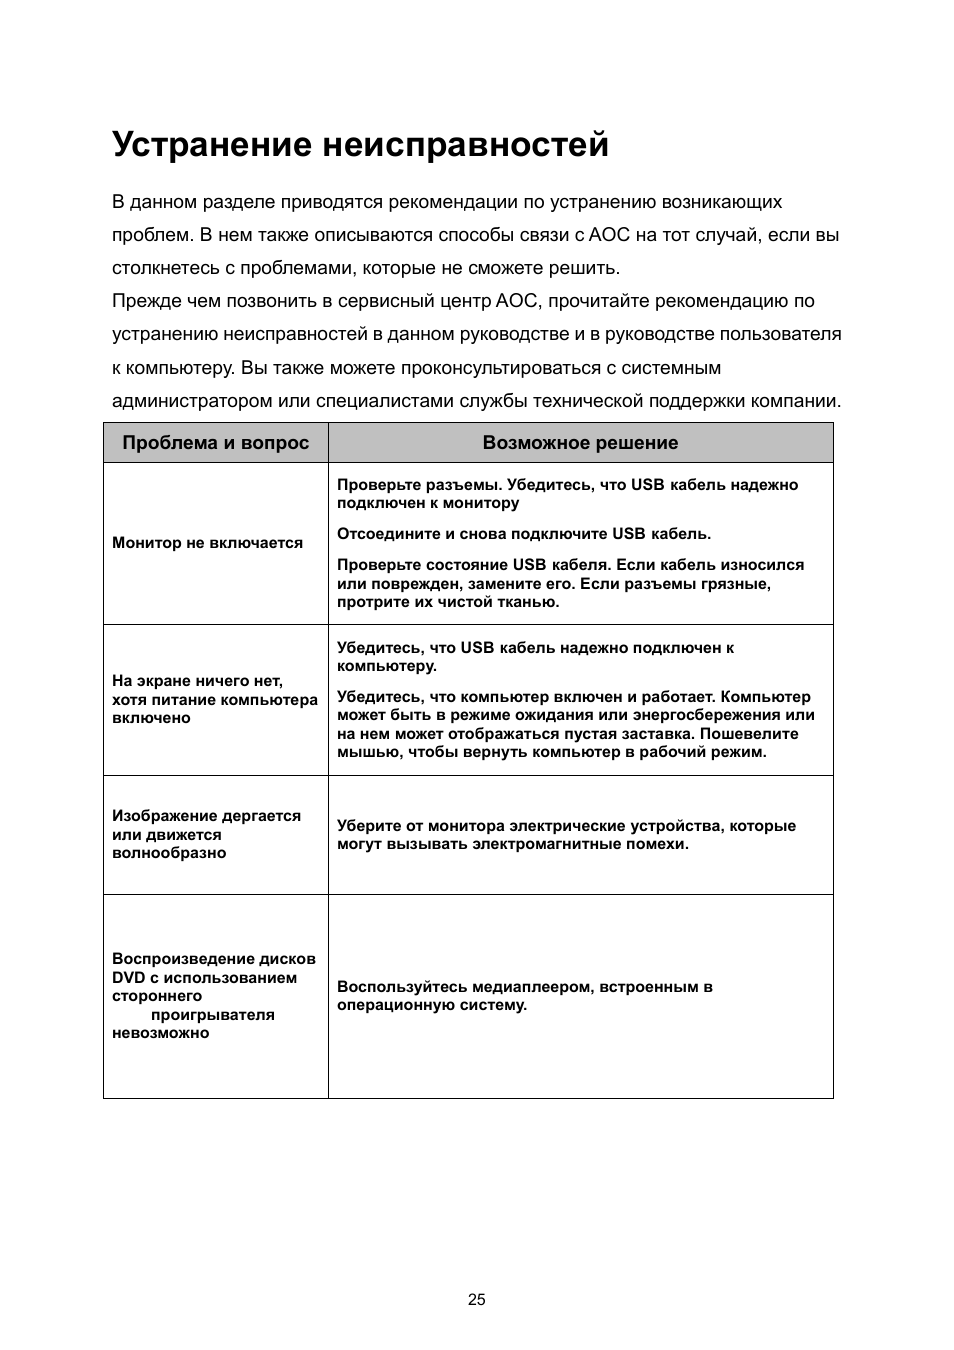 Устранение неисправностей | Инструкция по эксплуатации AOC E1759FWU | Страница 26 / 36